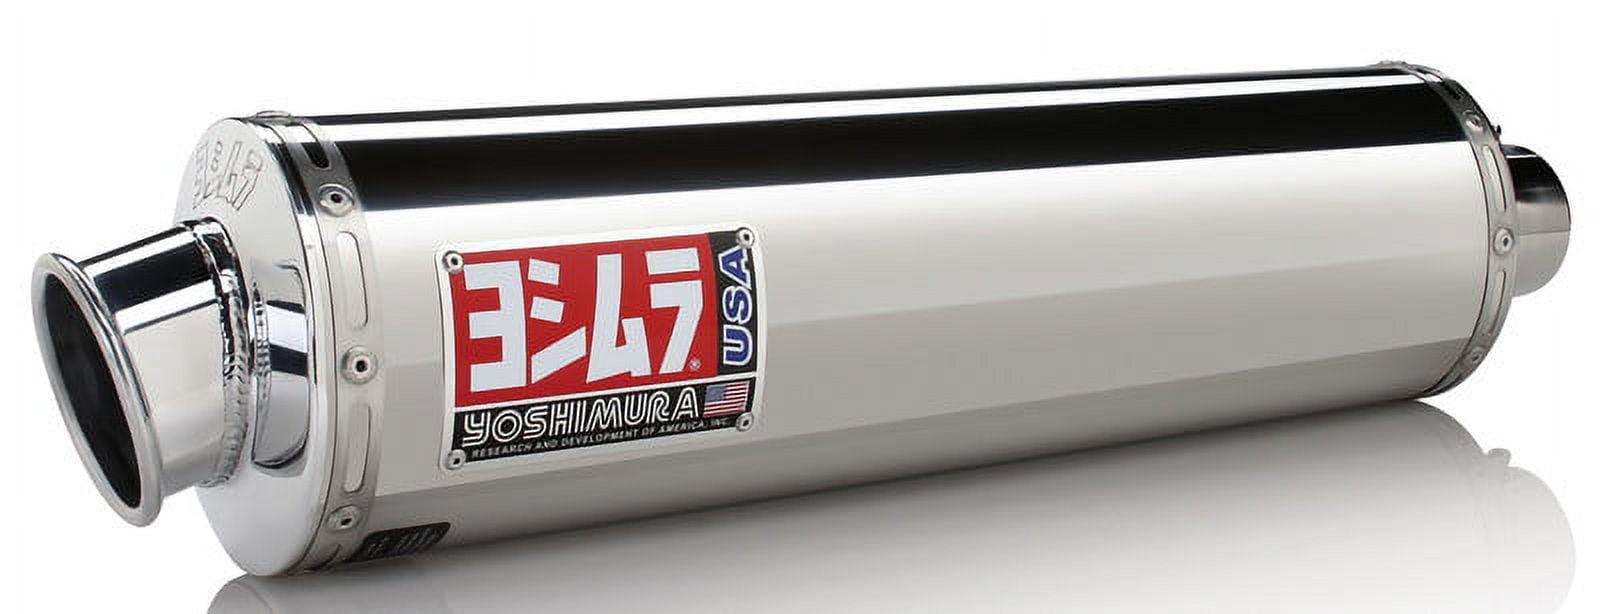 Yoshimura Rs-3 Street Series Slip-On Exhaust R149So R149SO